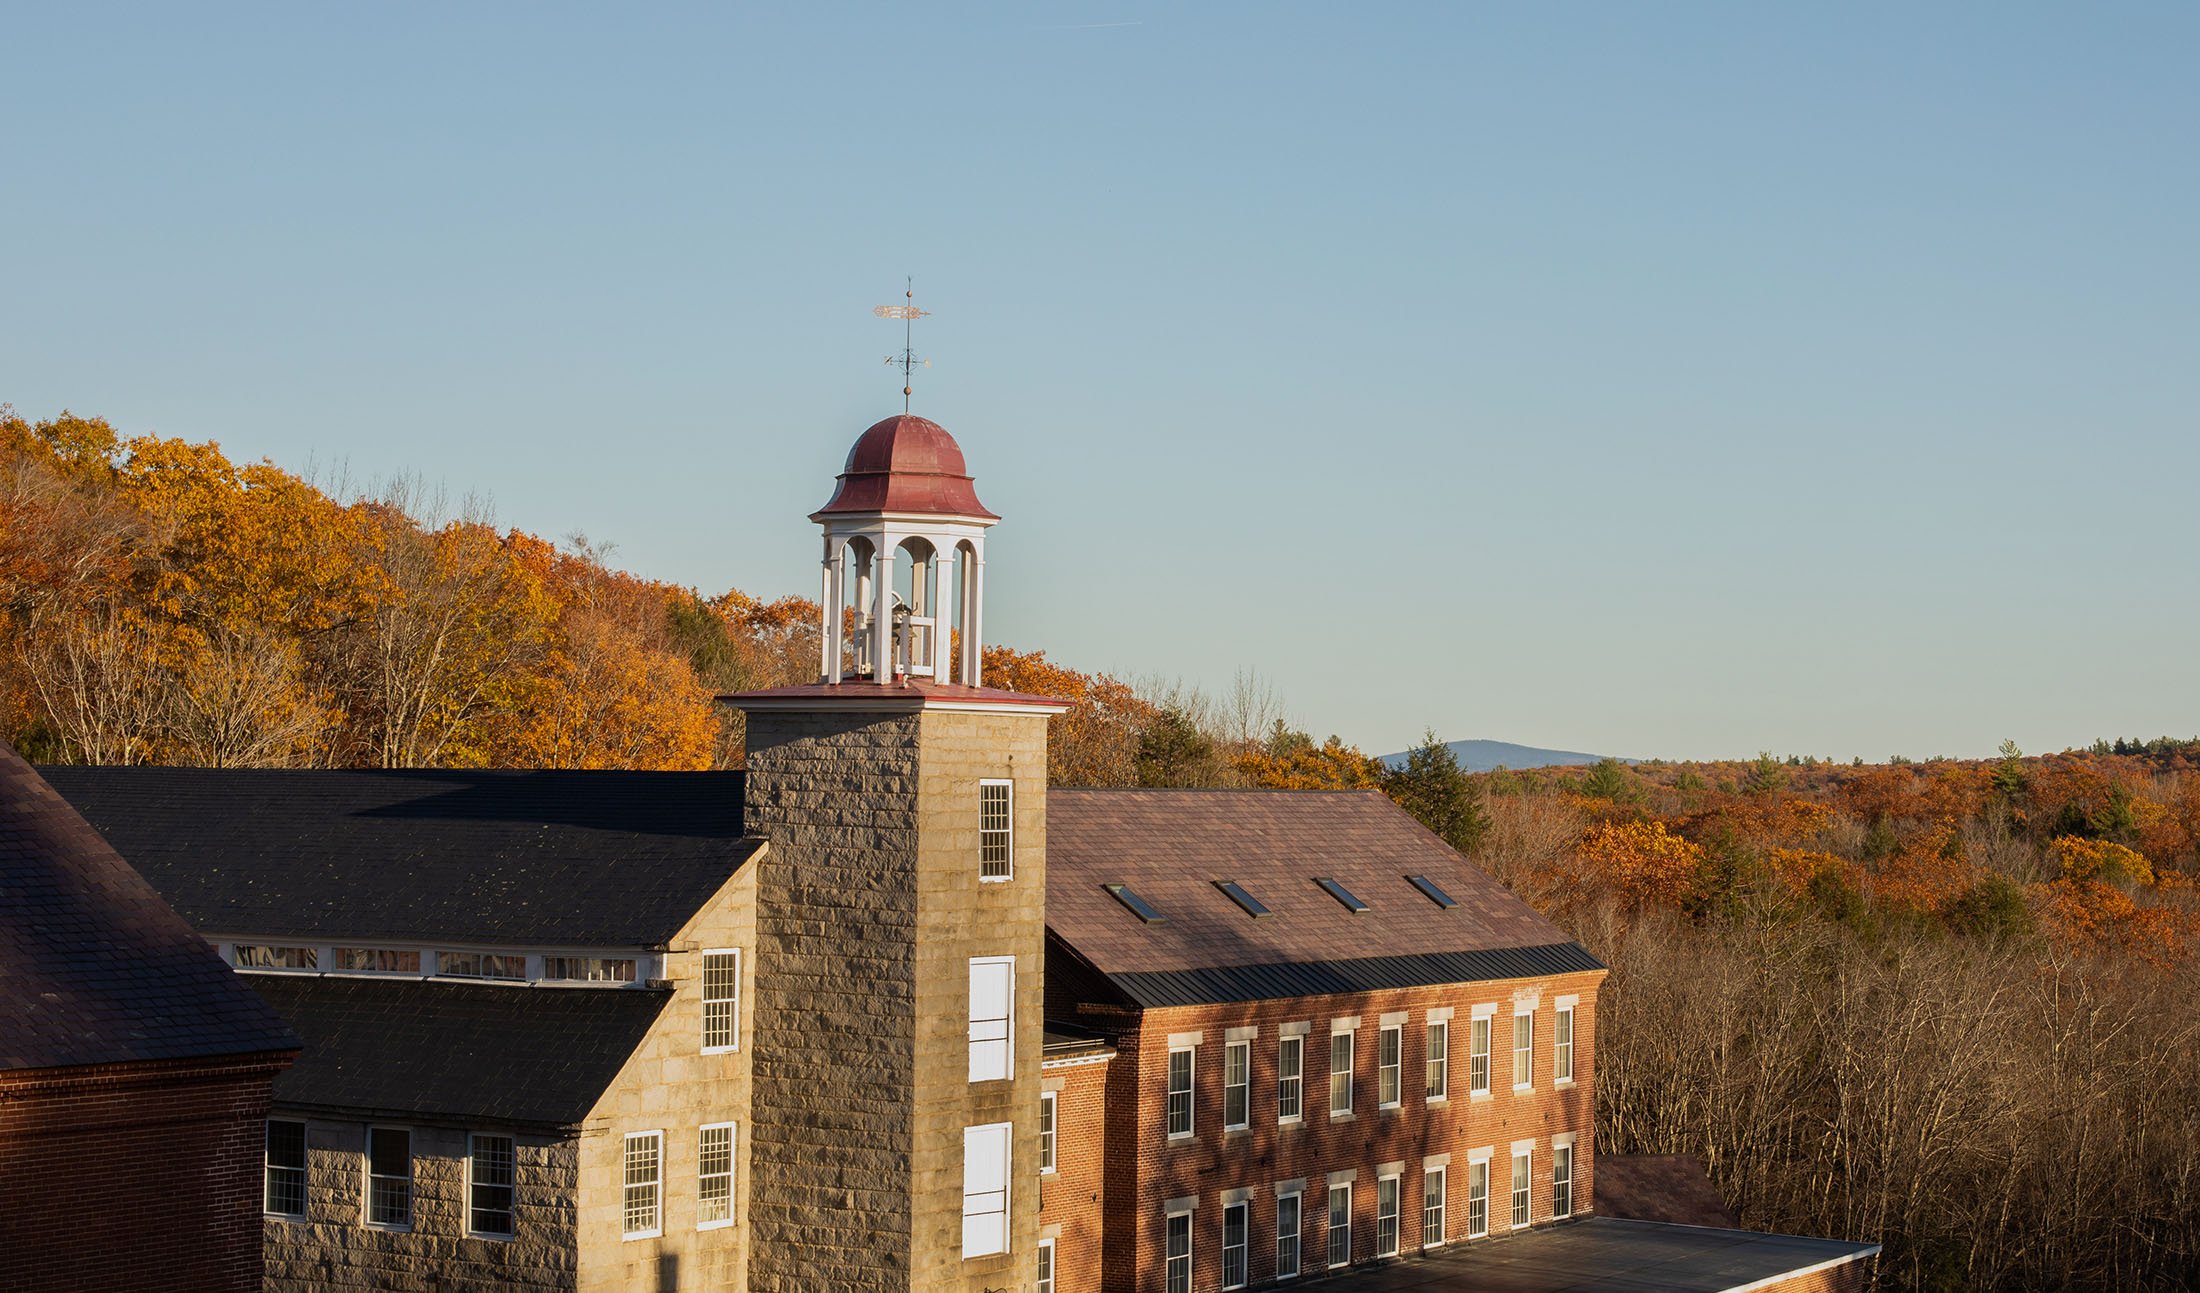 The Harrisville Mill in autumn. (photo © Jennifer Bakos 2019)